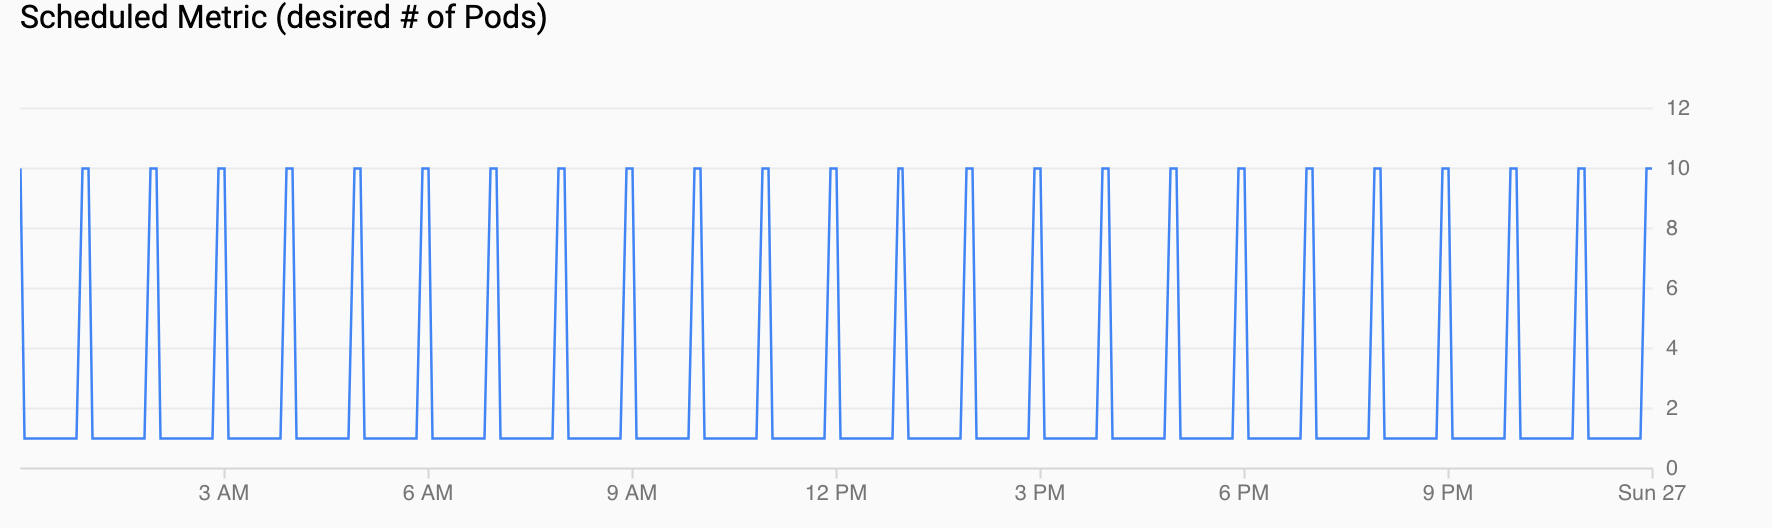 Gráfico de demanda para pods, mostrando um pico a cada hora.